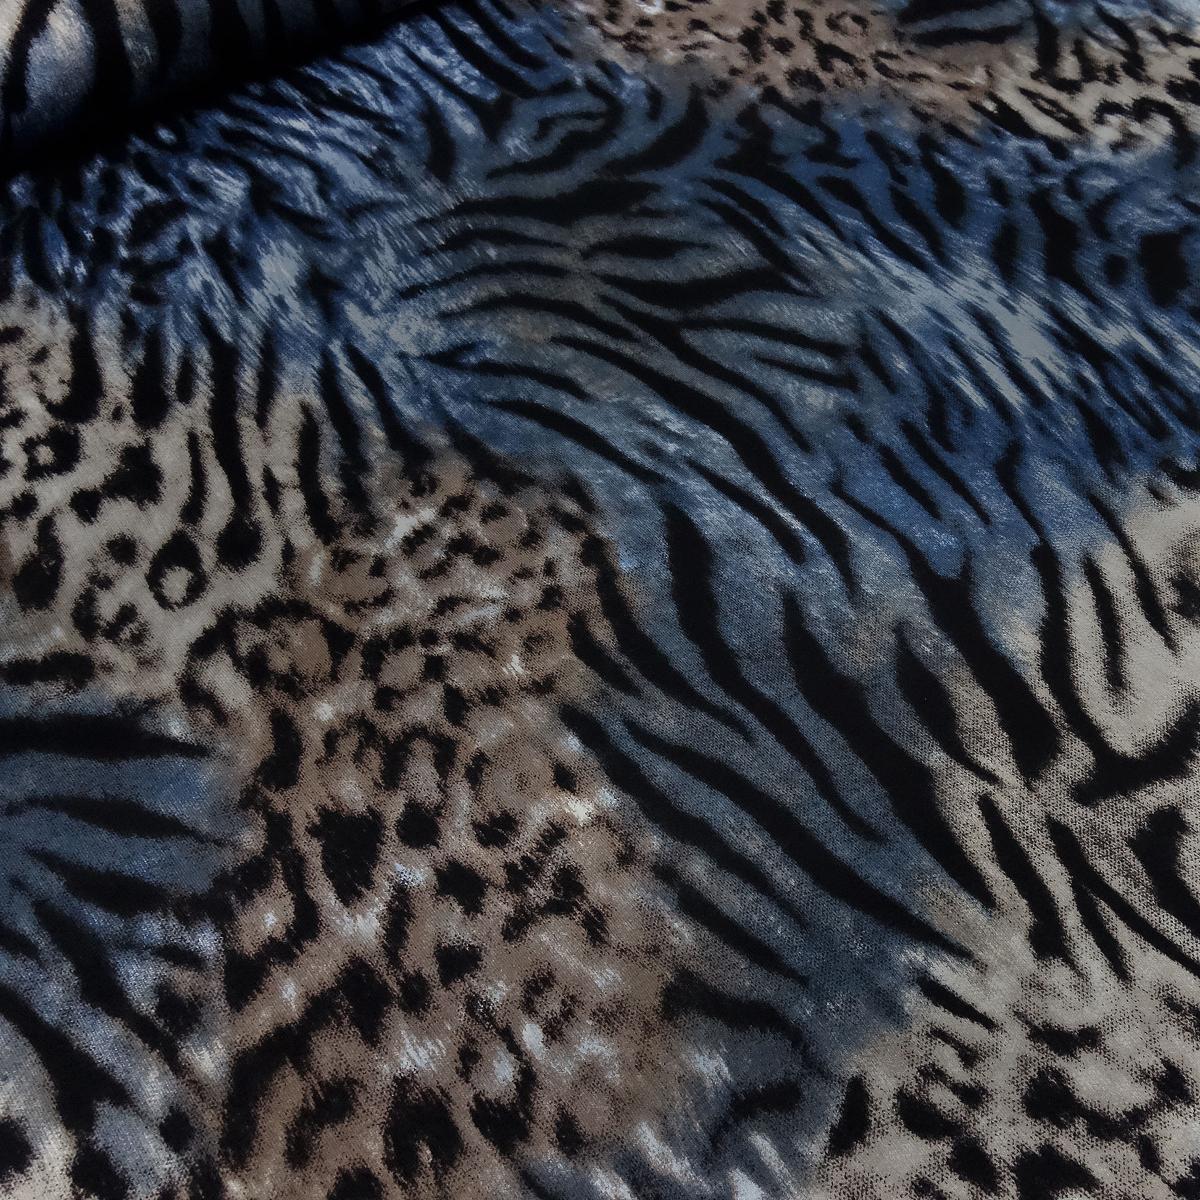 Stoff Viskose Jersey Leo Tiger Tierfellimitat Design blau braun beige schwarz Kleiderstoff